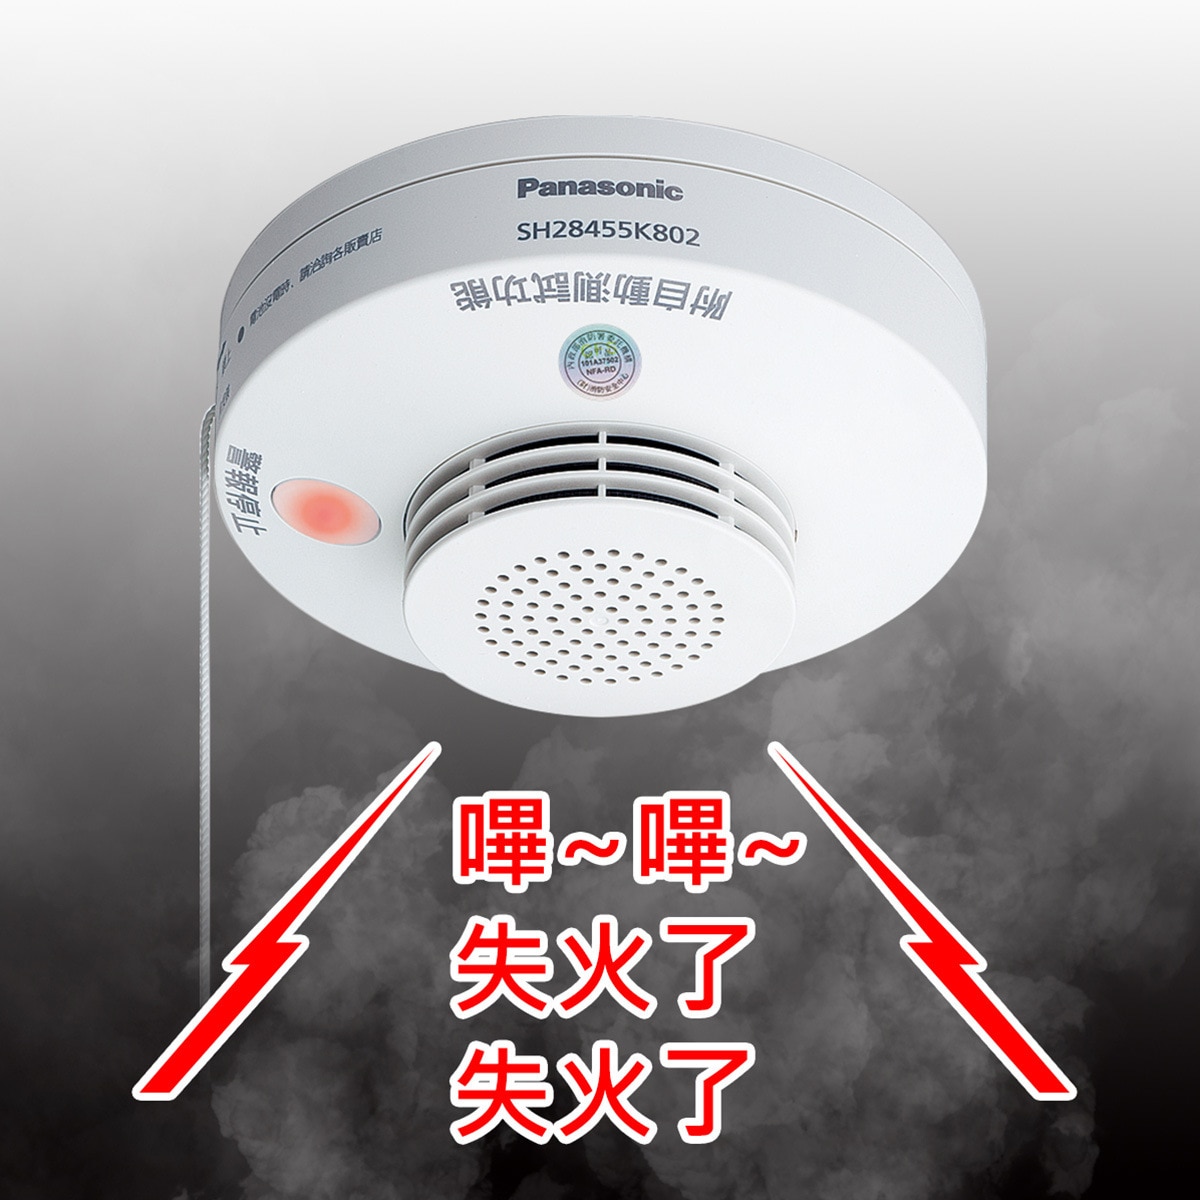 Panasonic 光電式住宅火災警報器(偵煙型)2入組